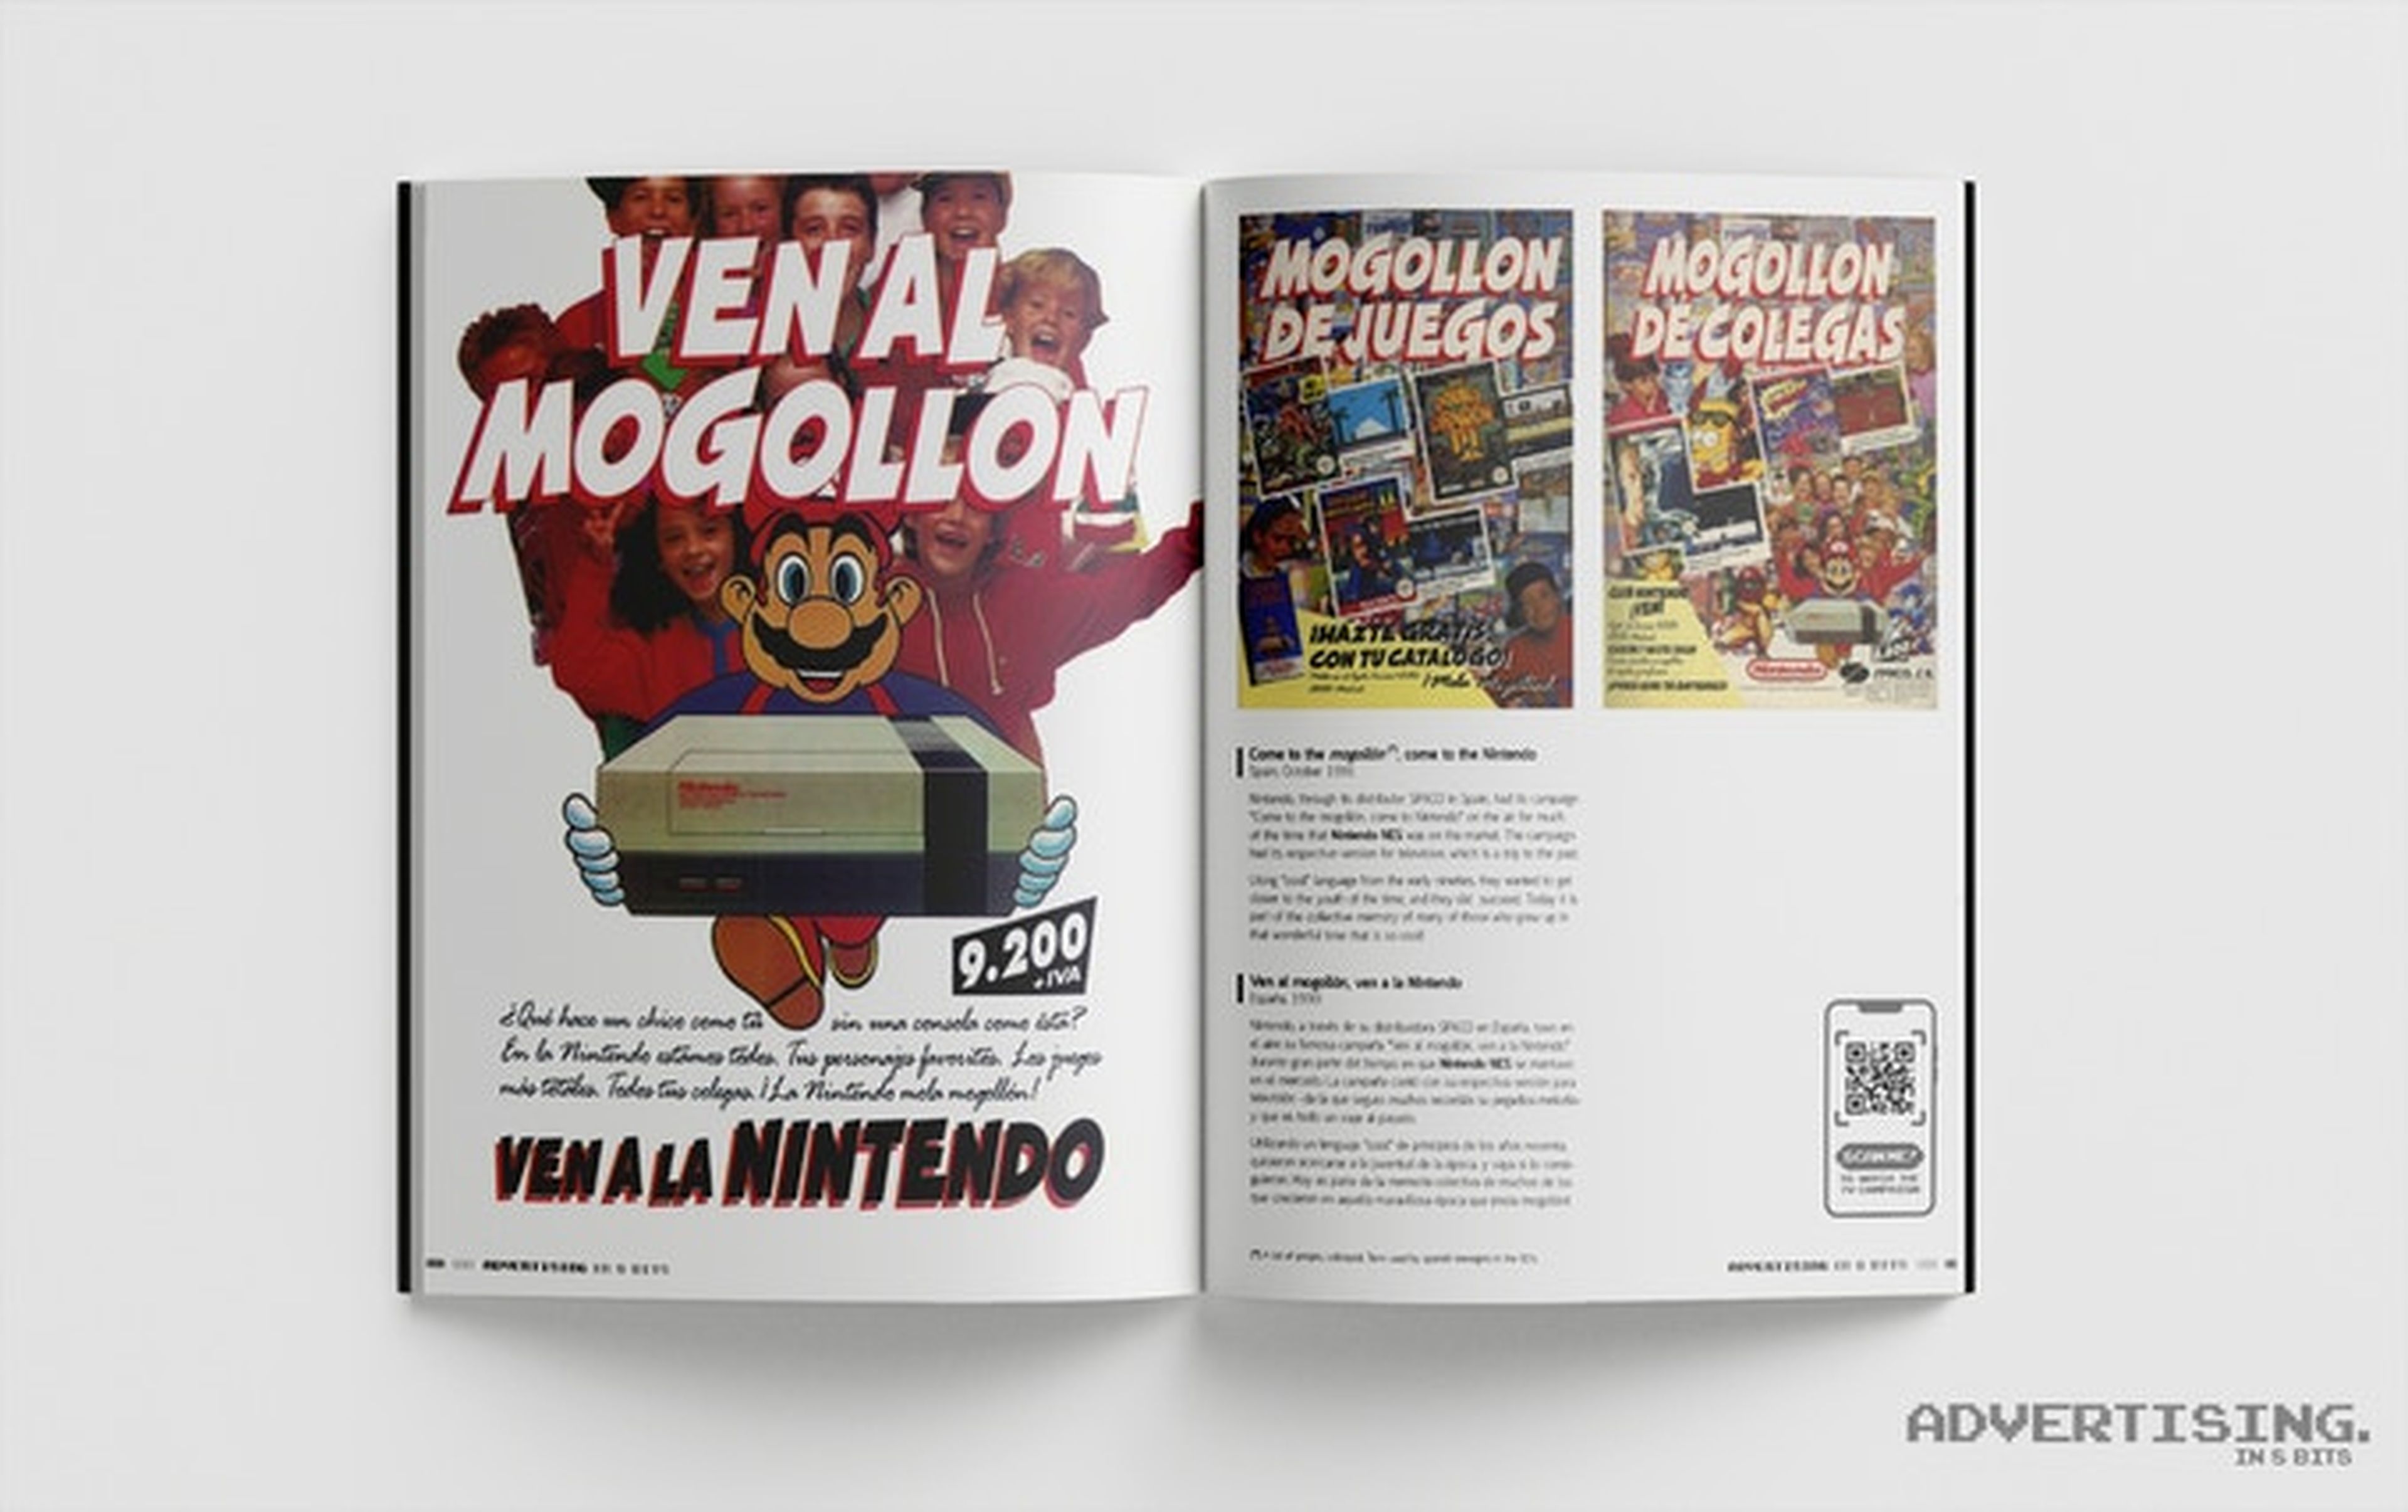 Advertising in 8 bits libro publicidad videojuegos